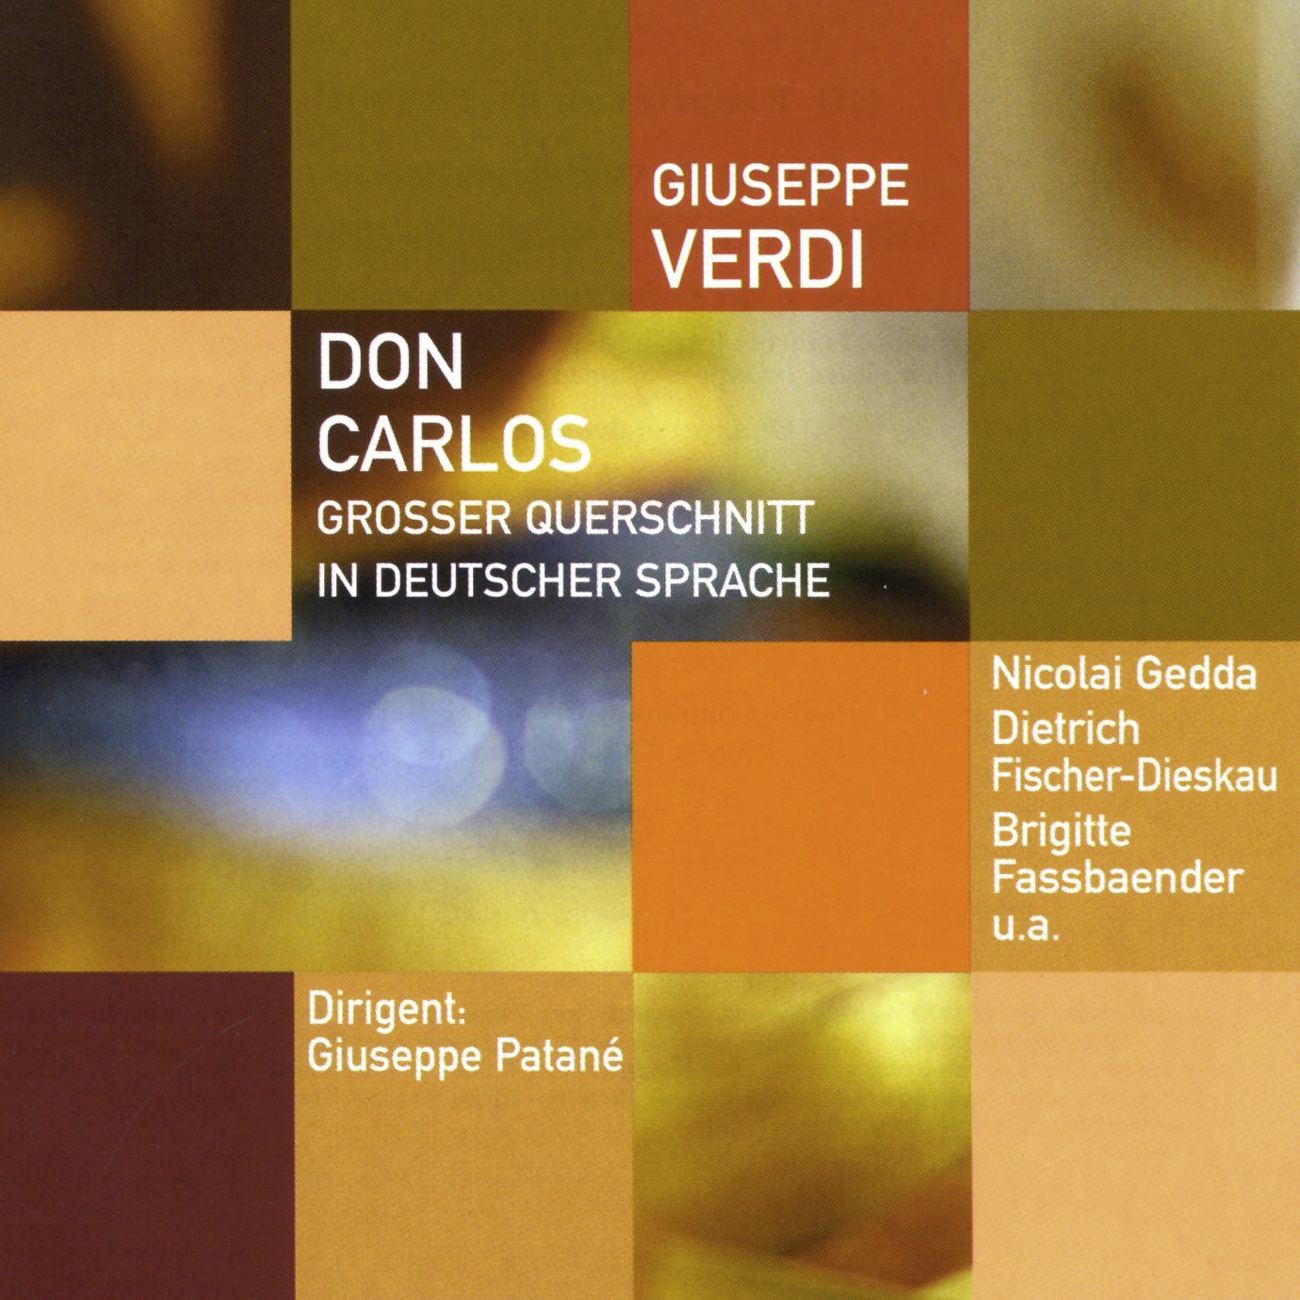 Don Carlos  Oper in 4 Akten Gro er Querschnitt in deutscher Sprache 2001 Digital Remaster, Zweiter Akt: Fluch treffe euch,